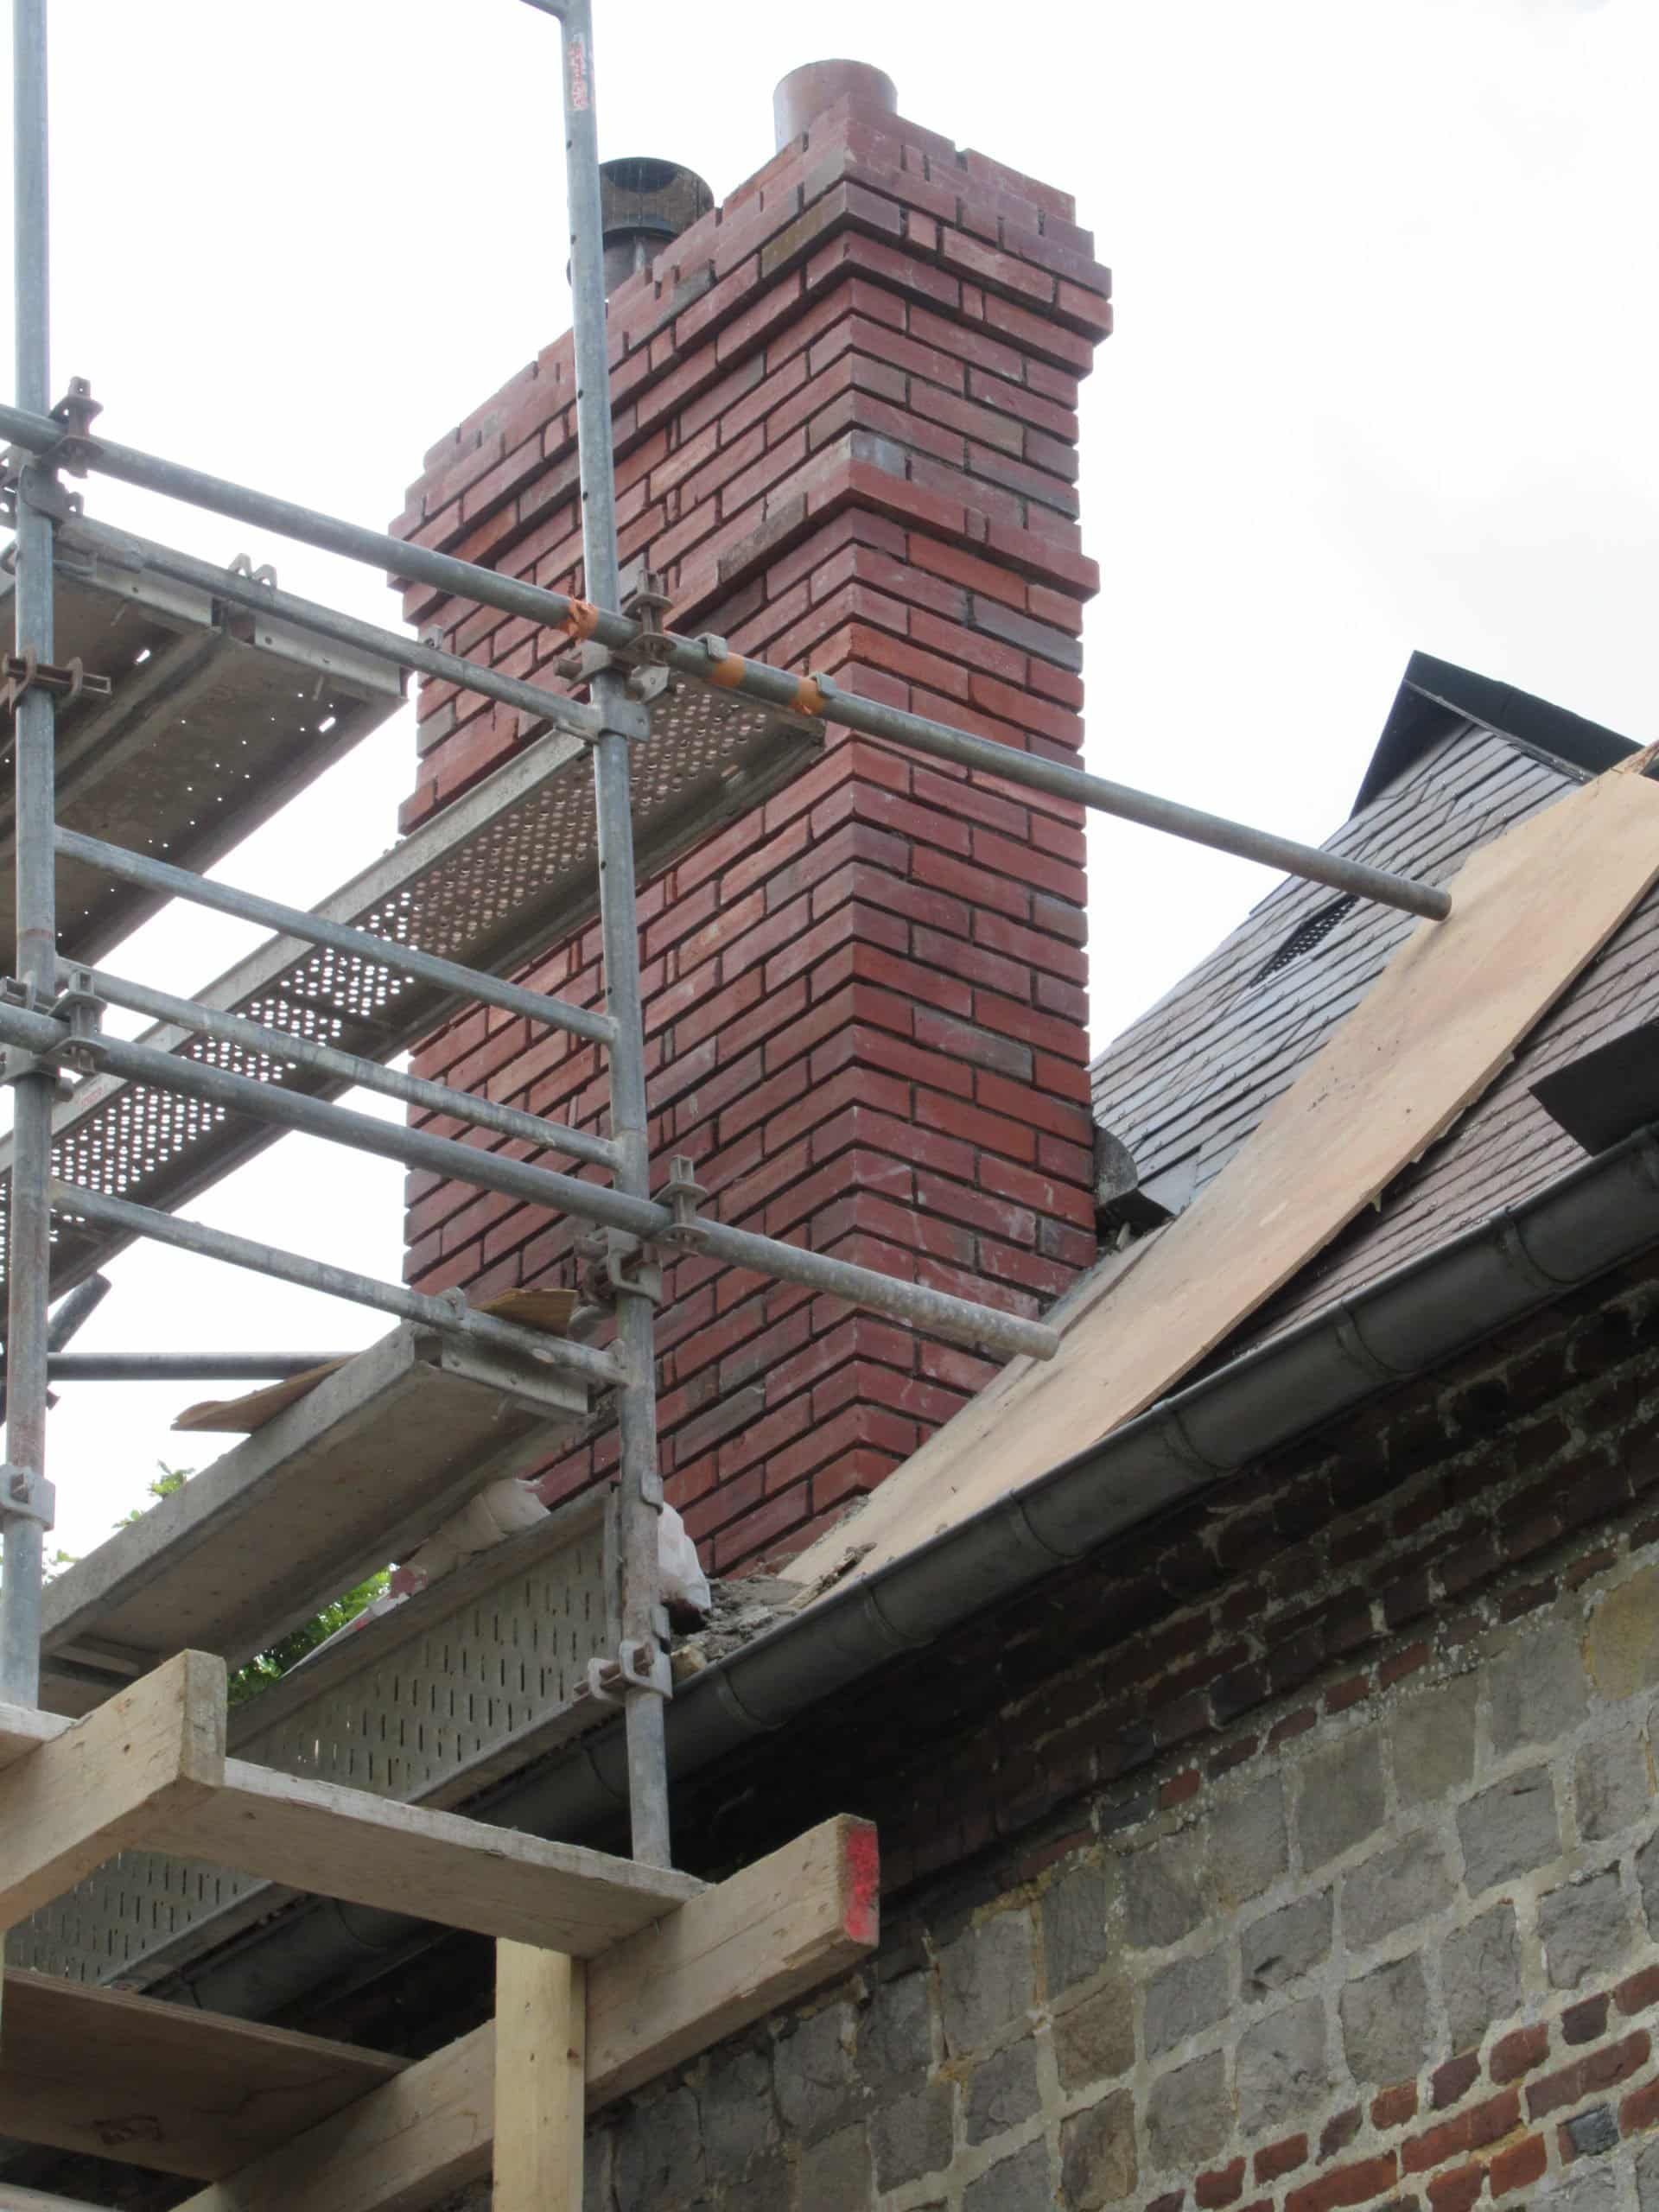 cheminee-complete-souche-brique-renovation-reparation